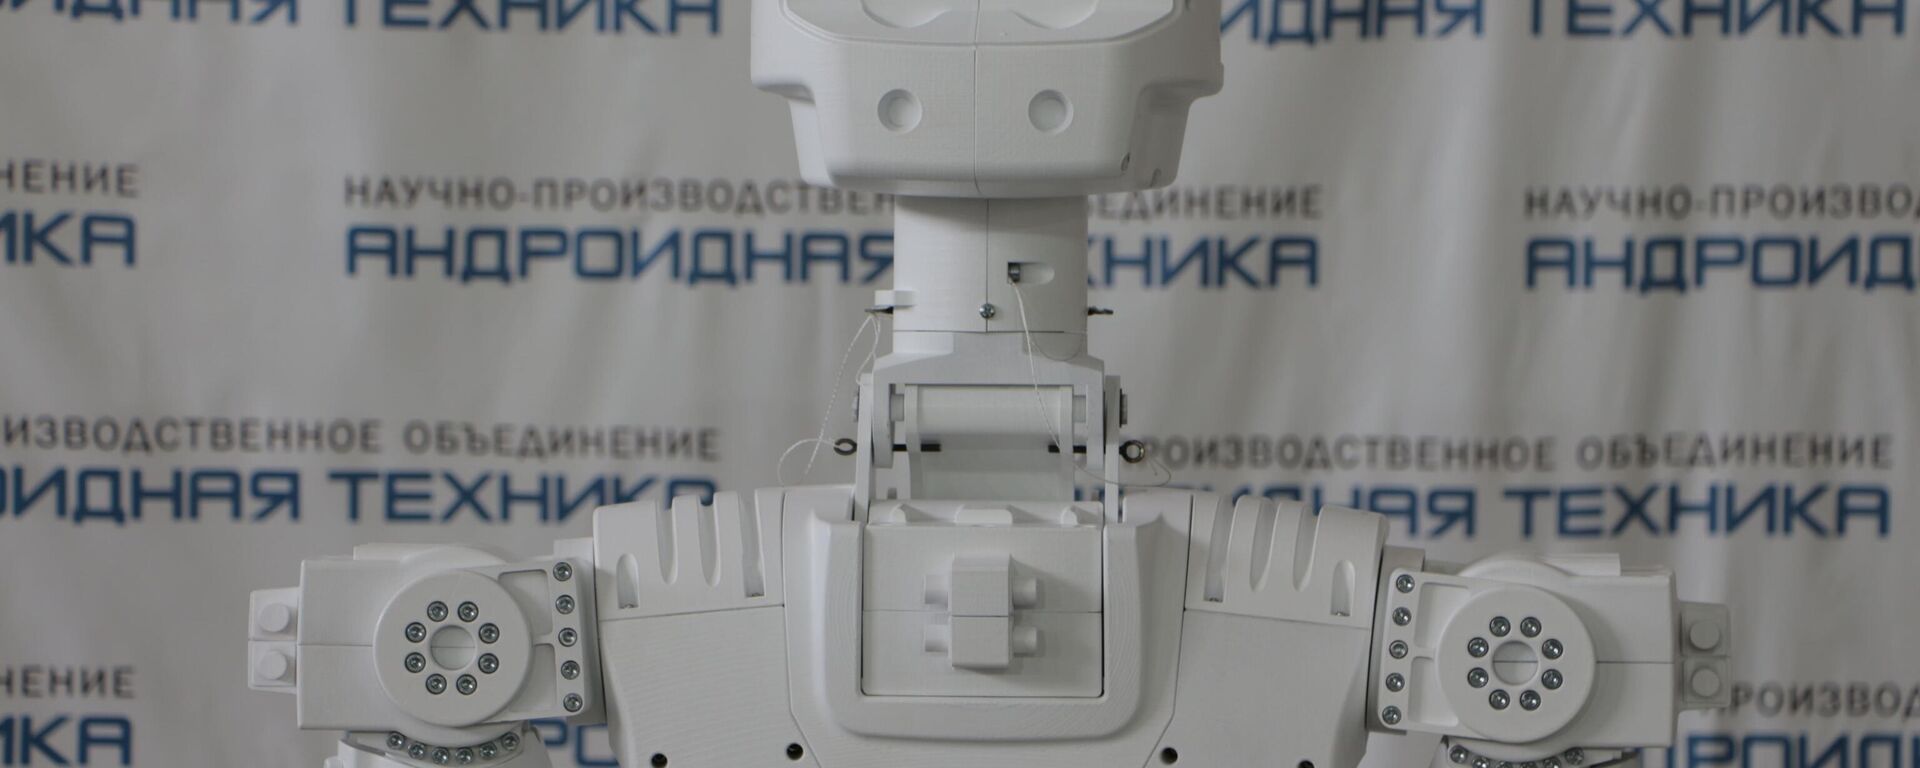 Robotun çalışan versiyonunun 2023’te yapılacağını belirten Rogozin ayrıca hidrolaboratuvar testleri için de bir maketin hazır olacağını kaydetti. - Sputnik Türkiye, 1920, 08.02.2022